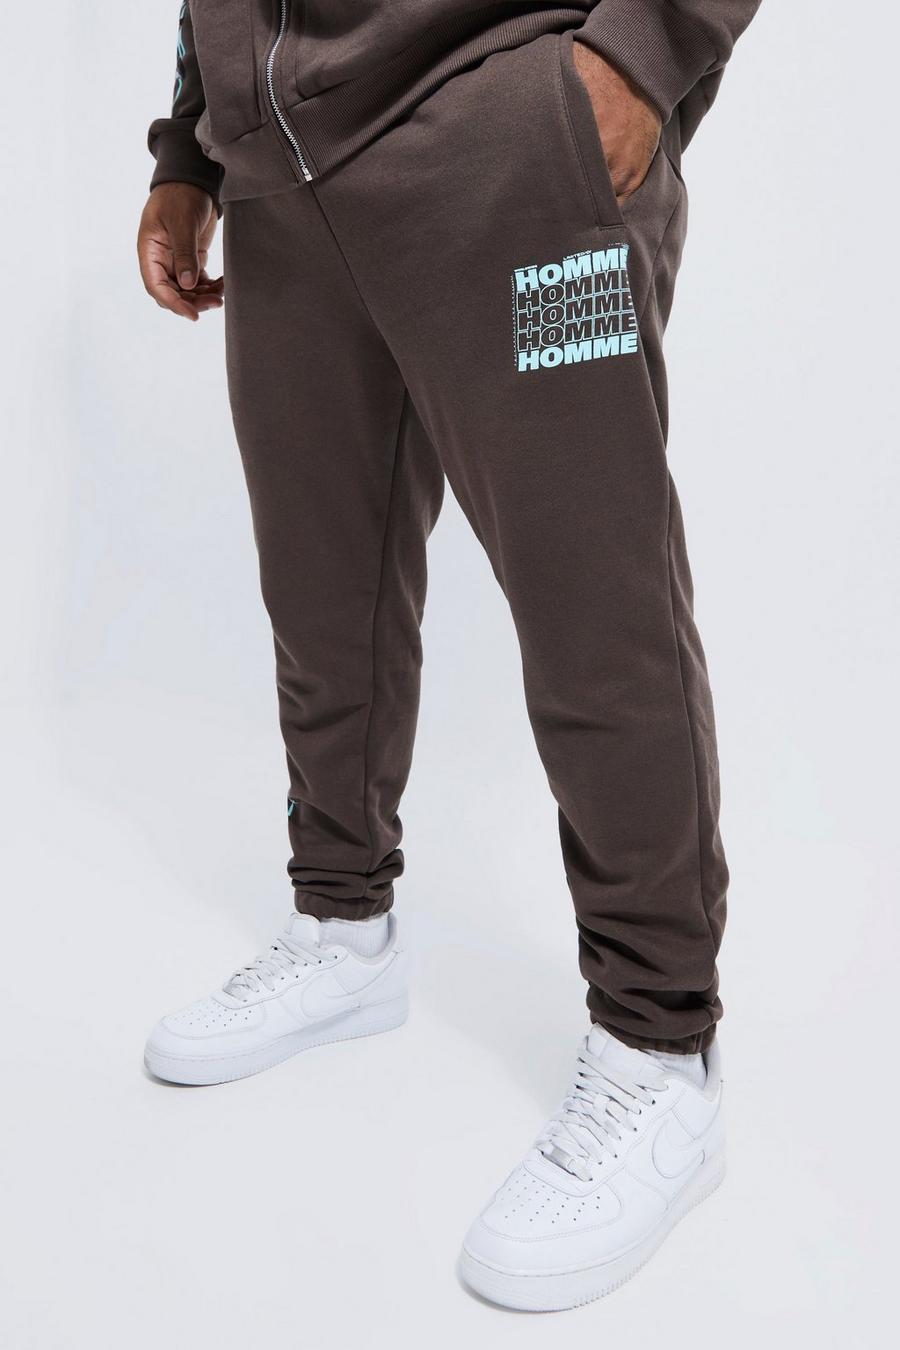 Pantalón deportivo Plus Regular con estampado gráfico Homme, Chocolate marrón